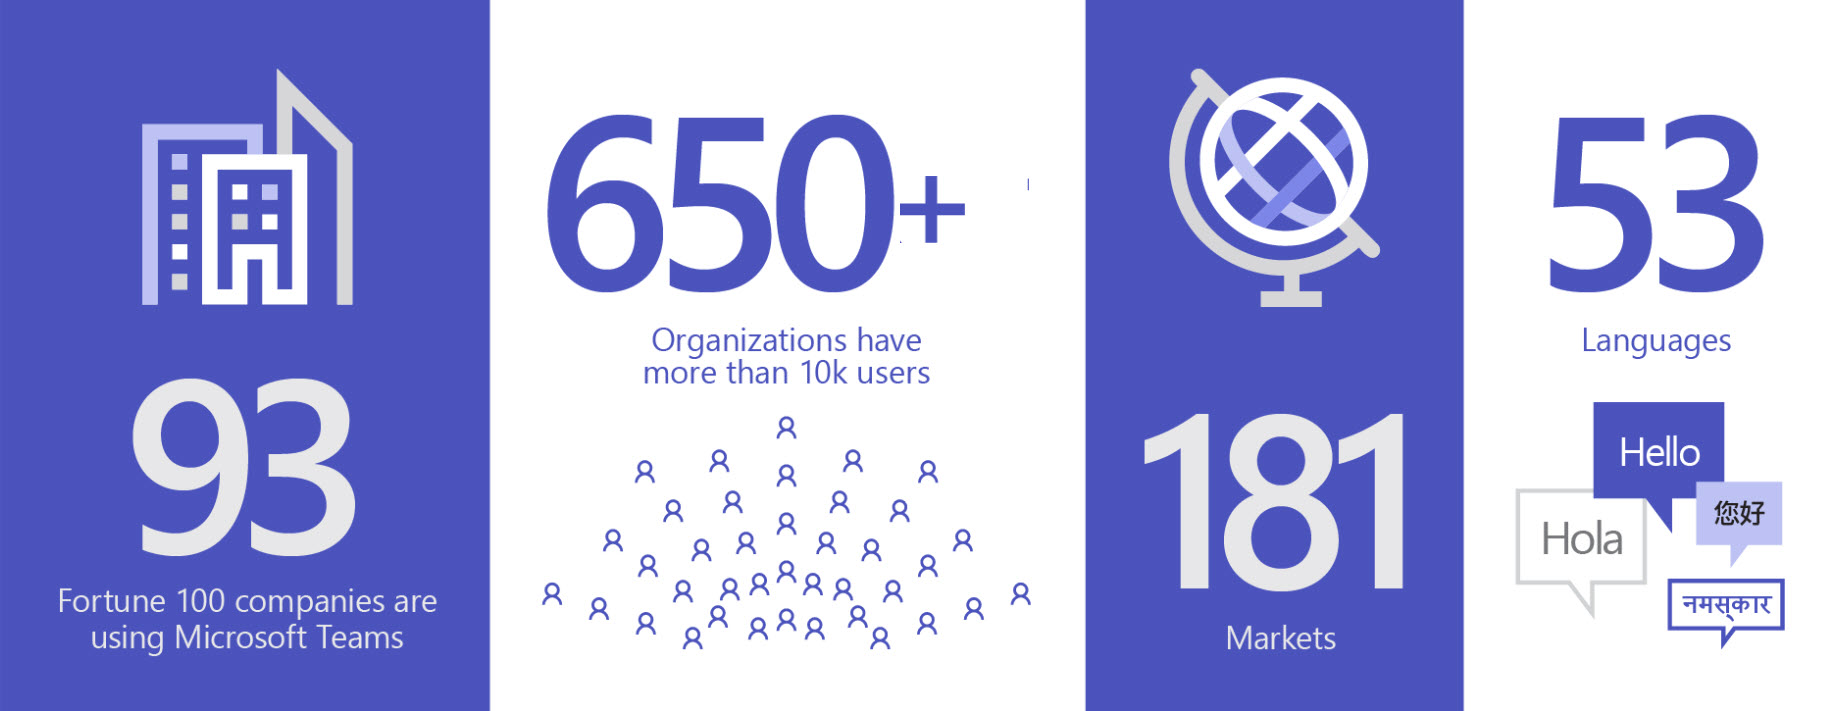 Hình ảnh thể hiện 93 tổ chức đang sử dụng Teams, hơn 650 tổ chức sở hữu hơn 10 nghìn người dùng, ở 181 thị trường và 53 ngôn ngữ.